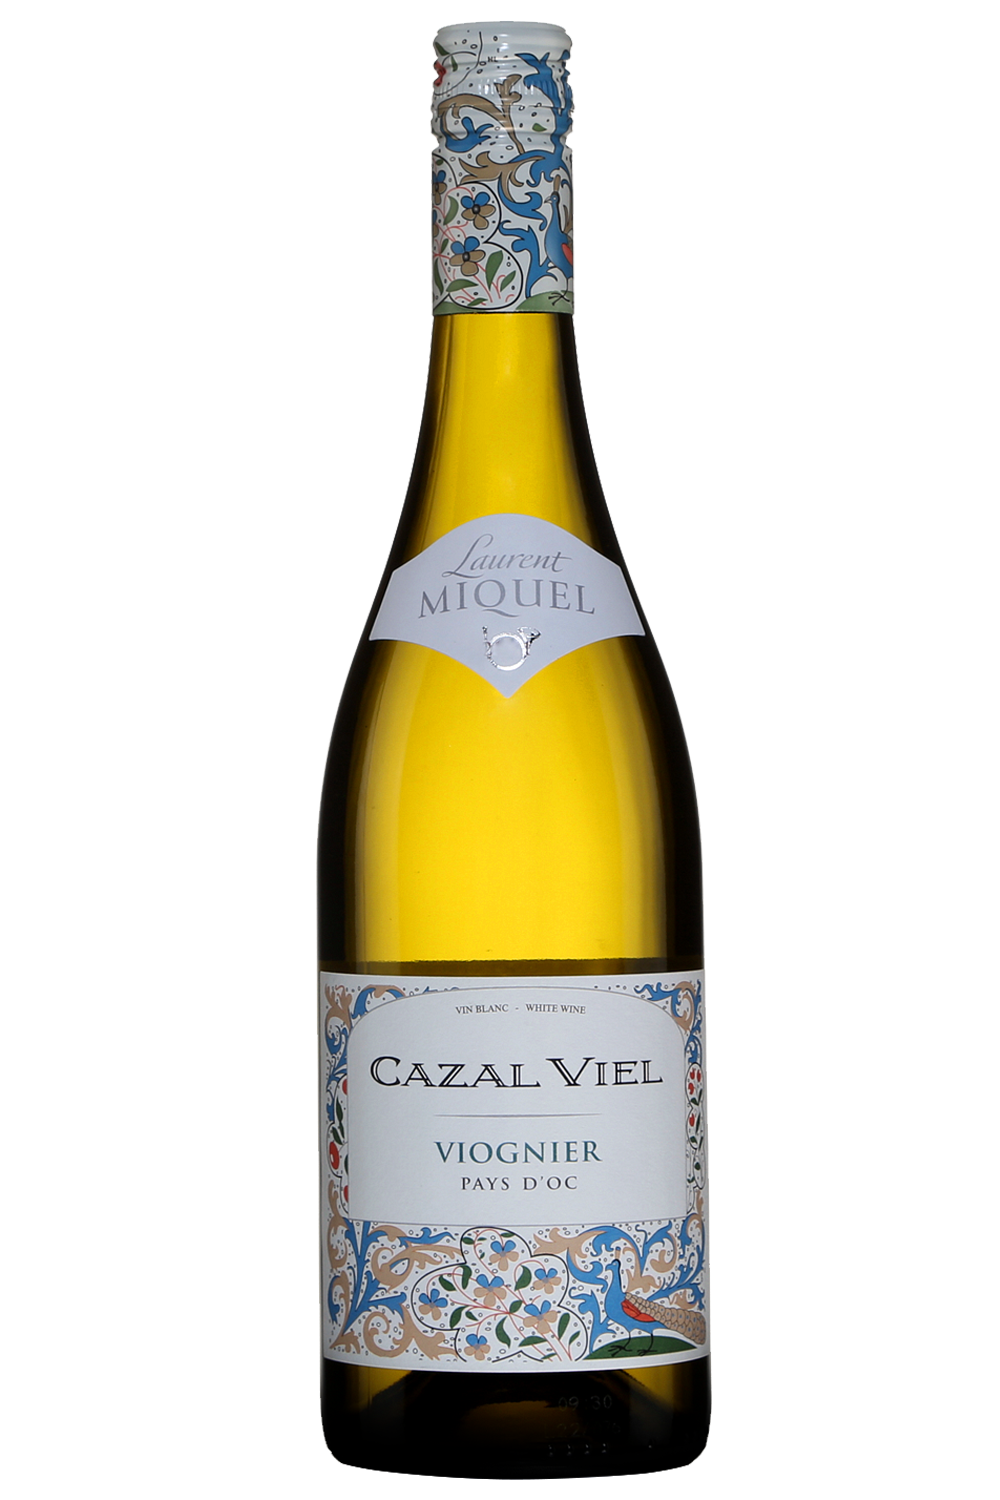 Château Cazal Viel Viognier 2016, $16.45